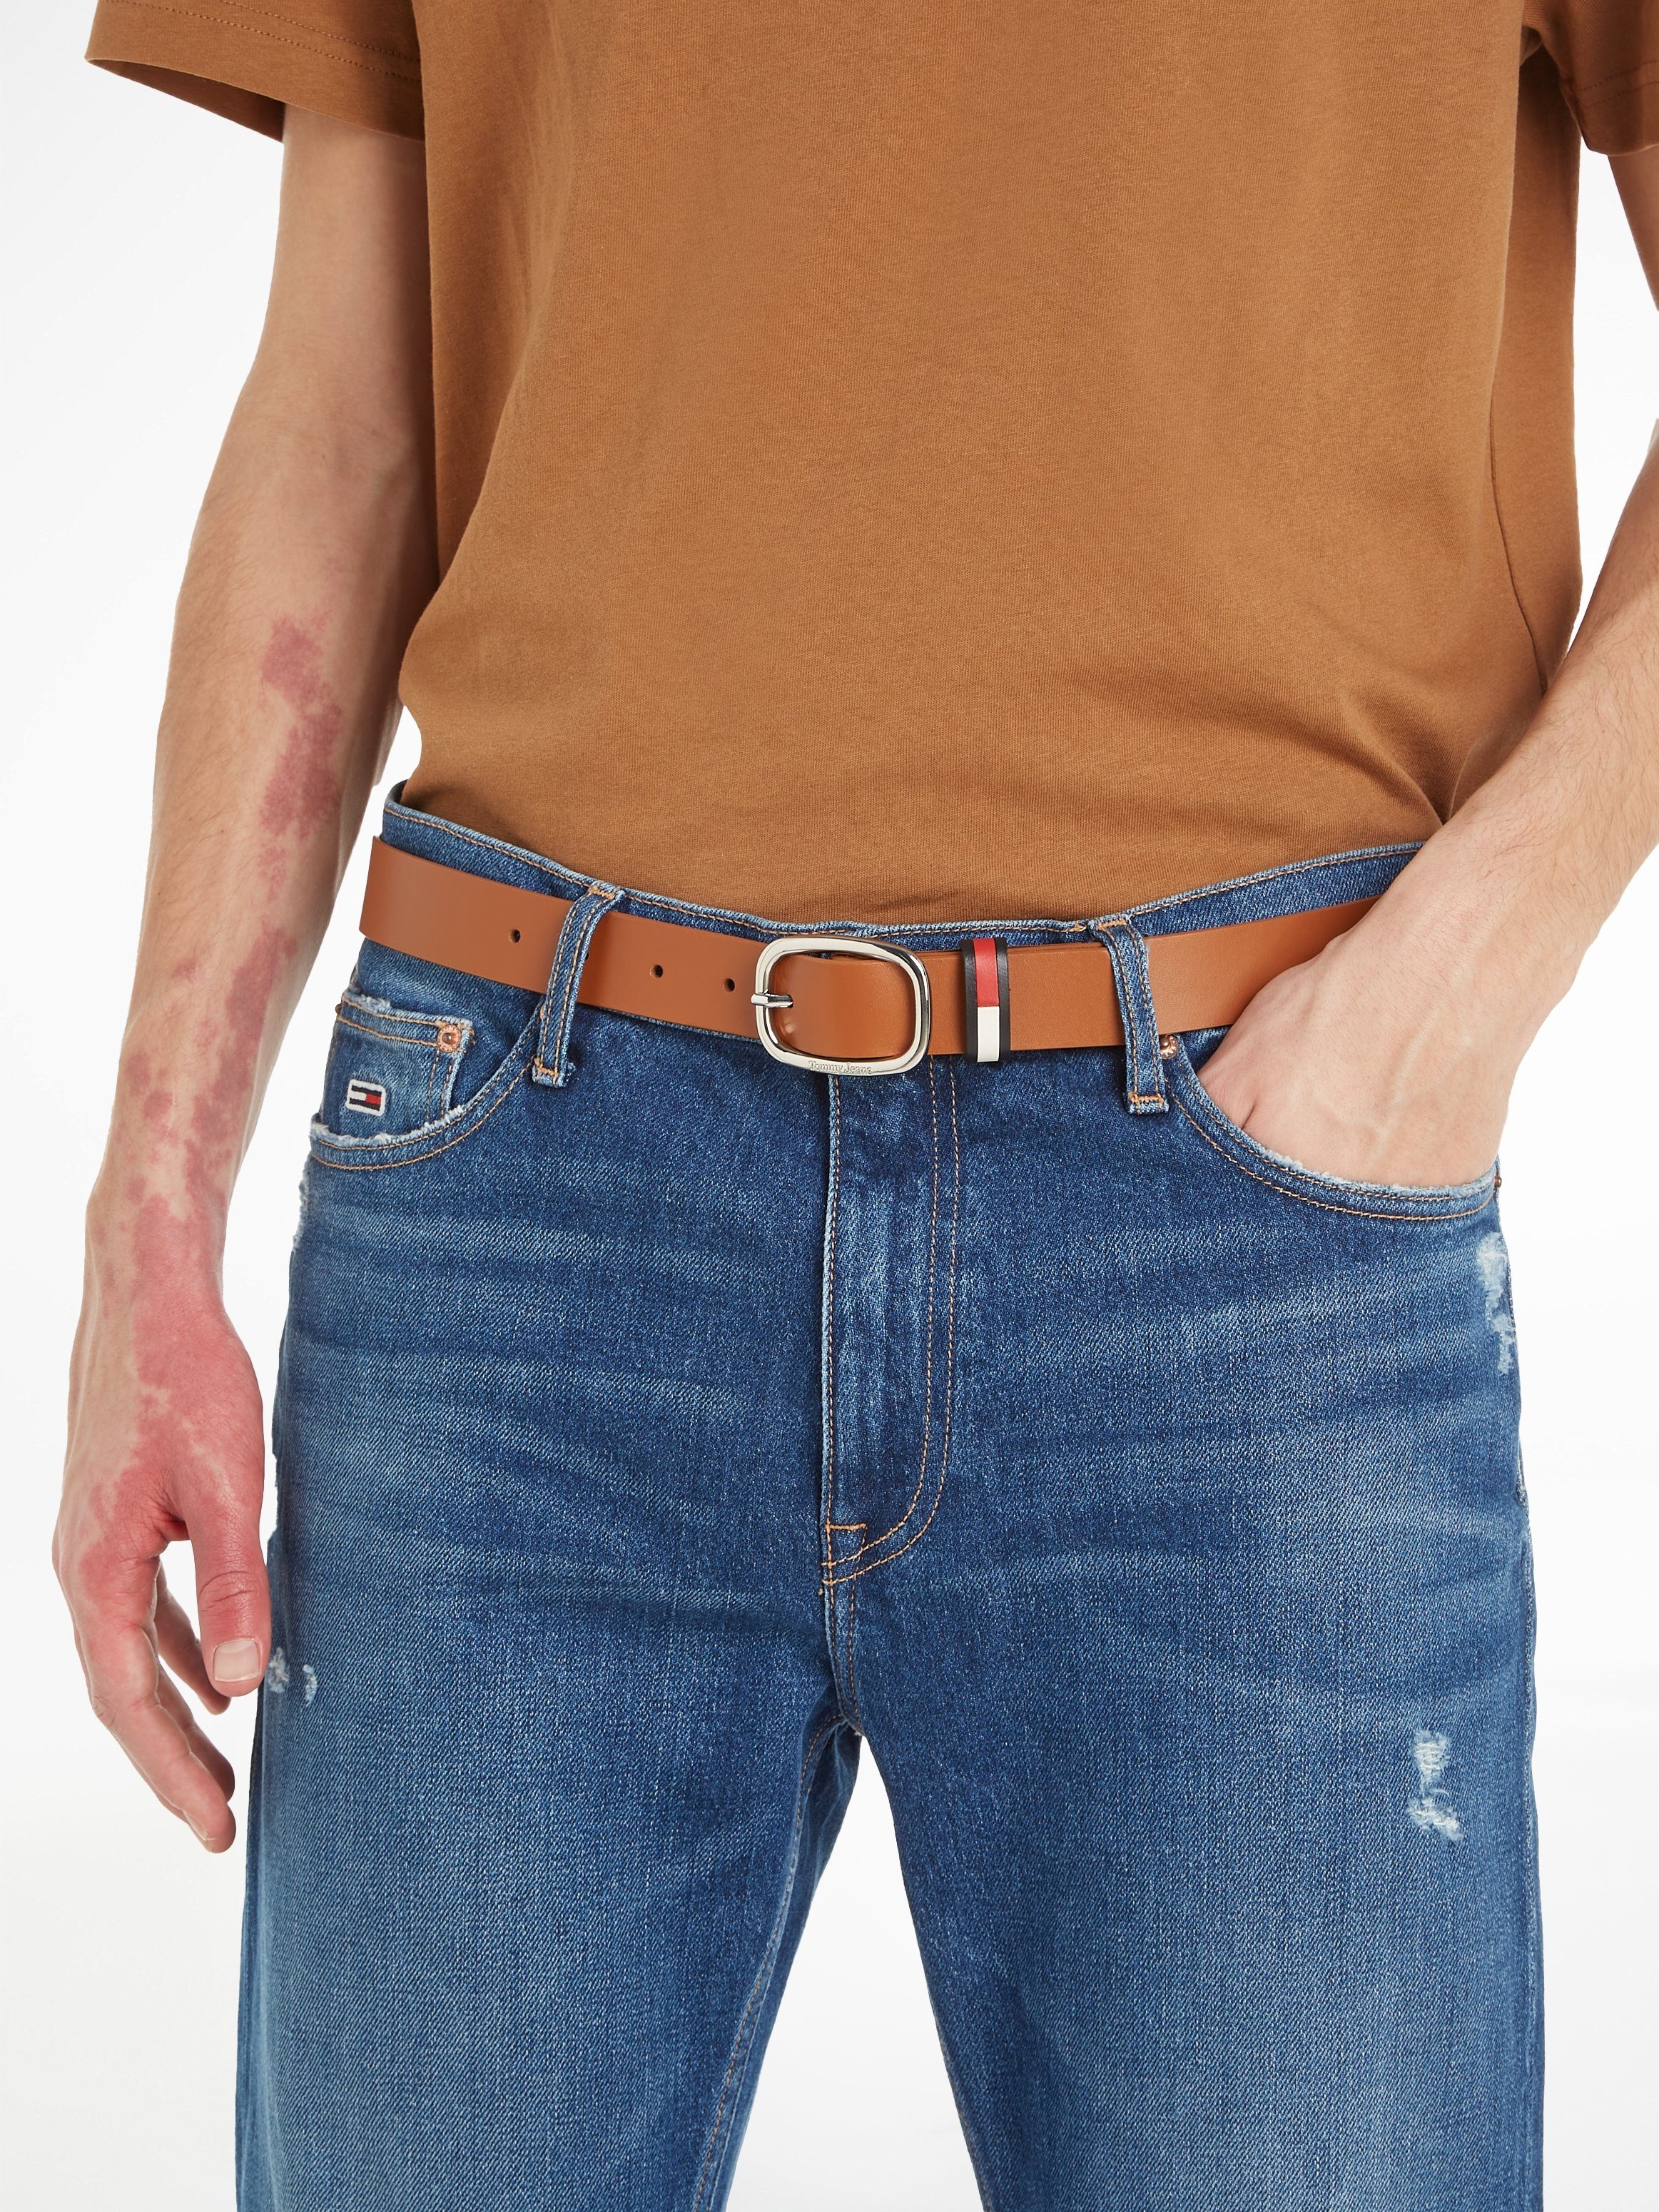 Jeans Logo-Gürtelschlaufe OVAL cognac SHAPE mit Ledergürtel Tommy CO